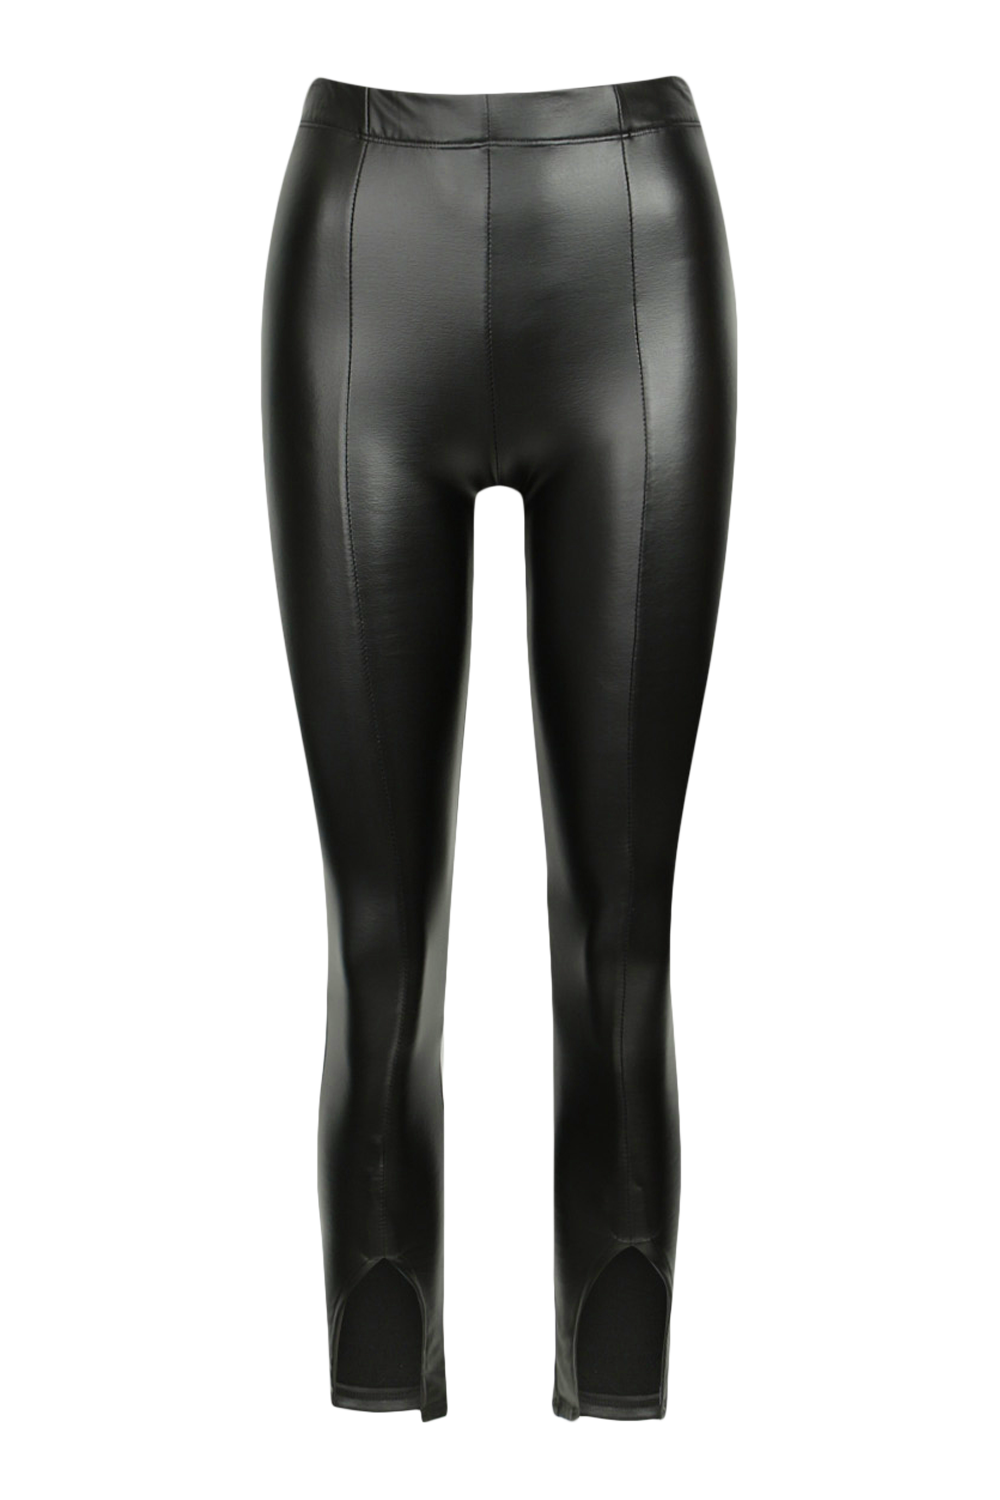 Topshop, Pants & Jumpsuits, Topshop Petite Faux Leather Pant With Hem  Split